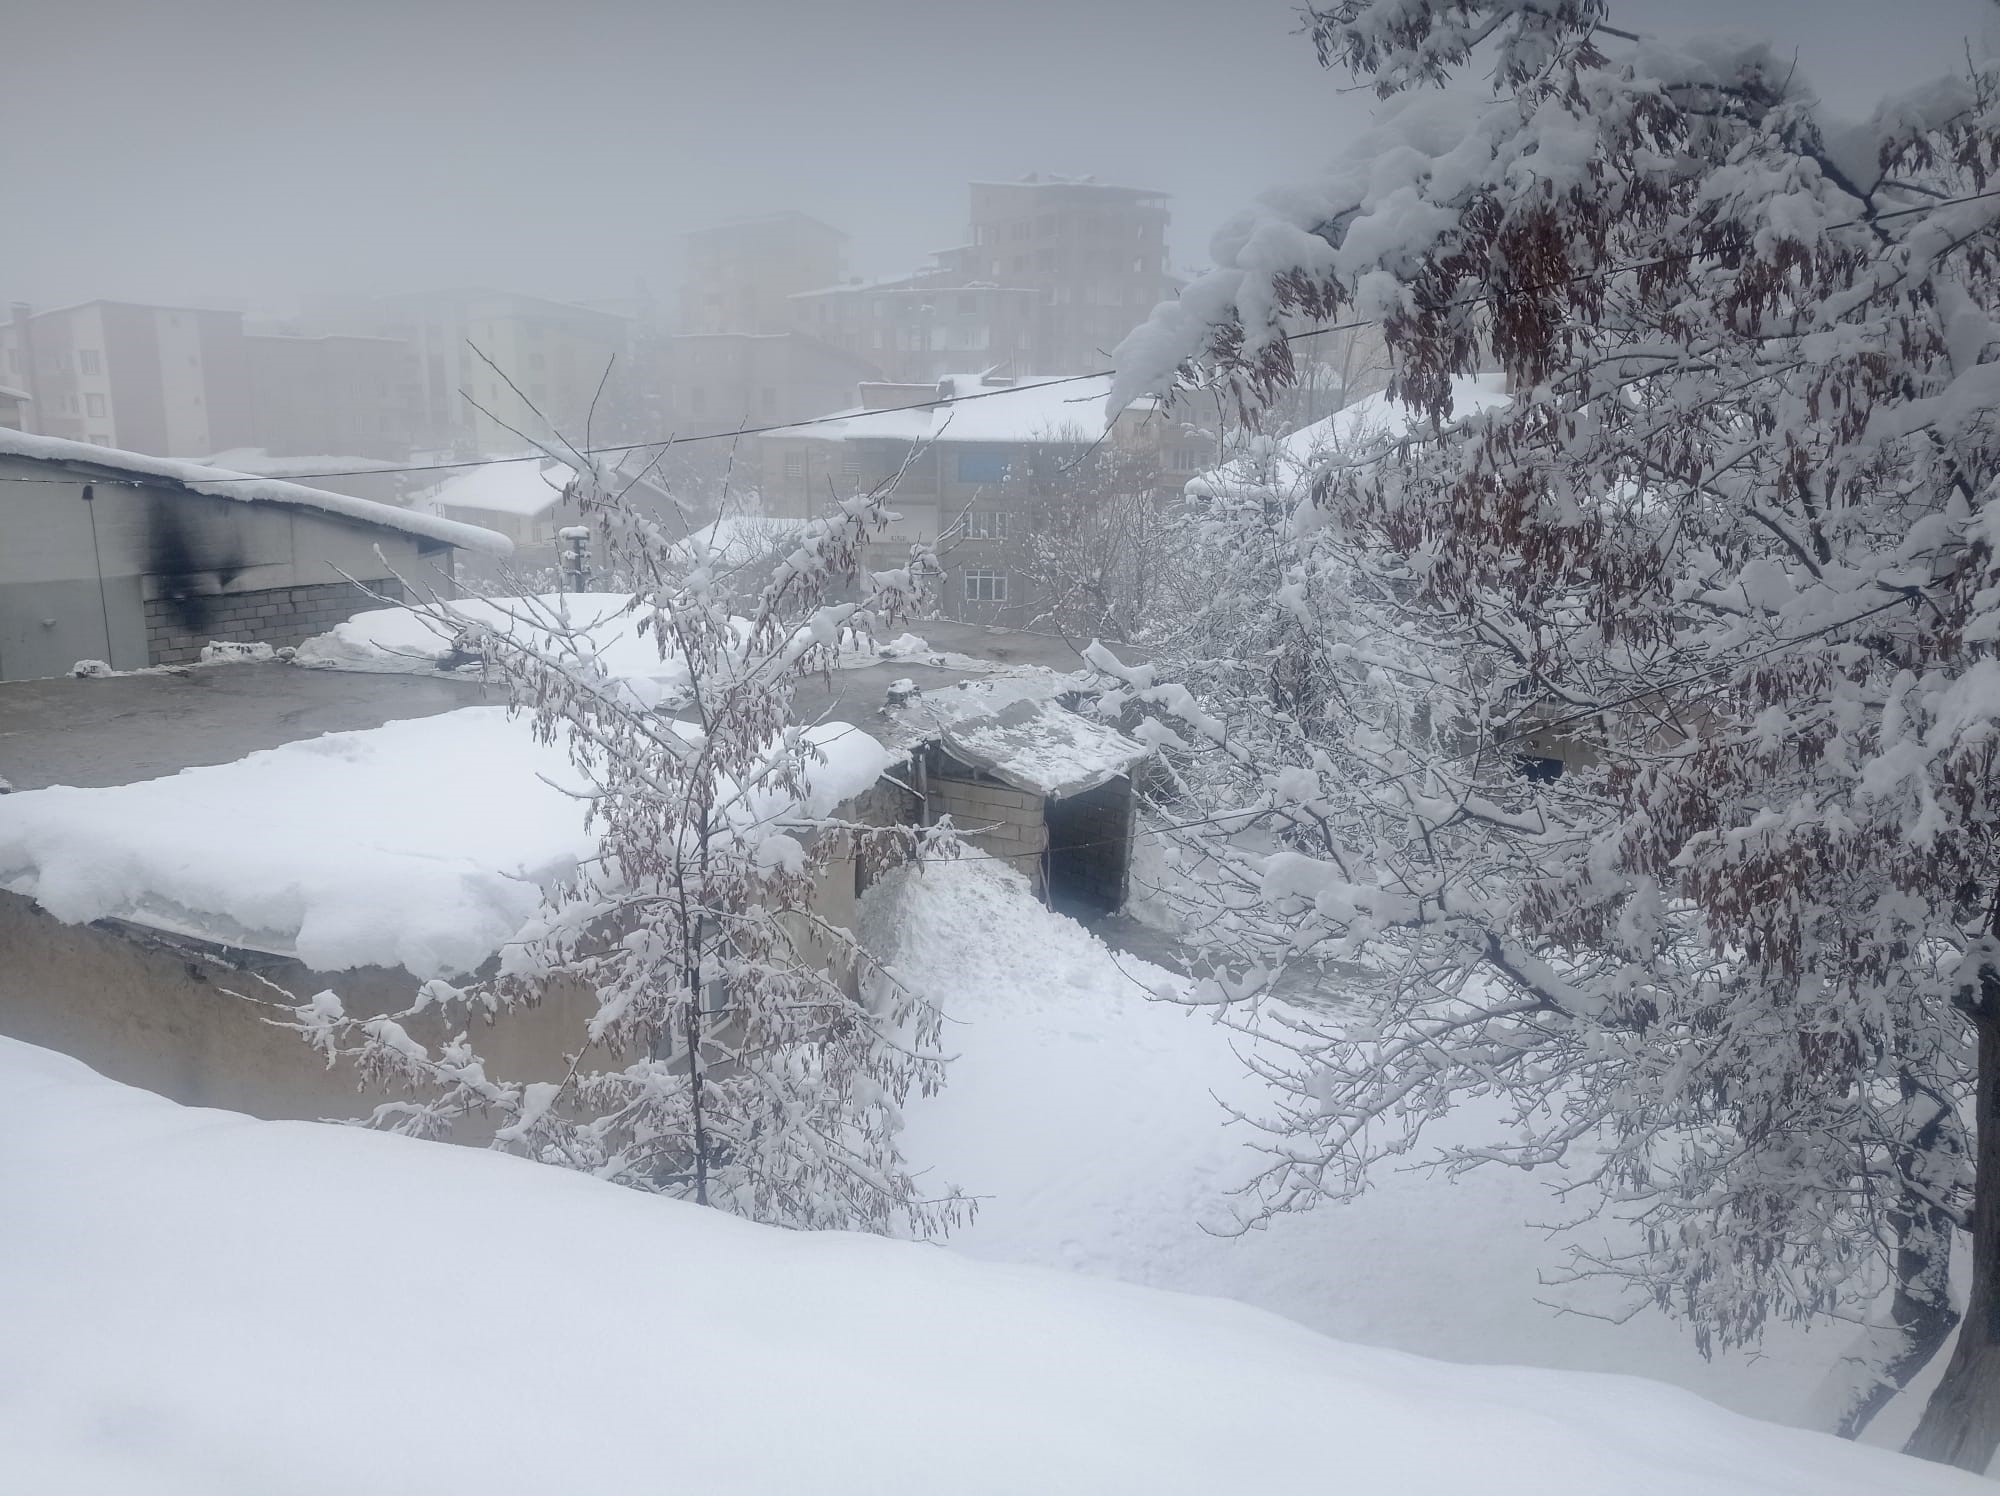 Hakkari'de kar yağışı yerini soğuk havaya bıraktı